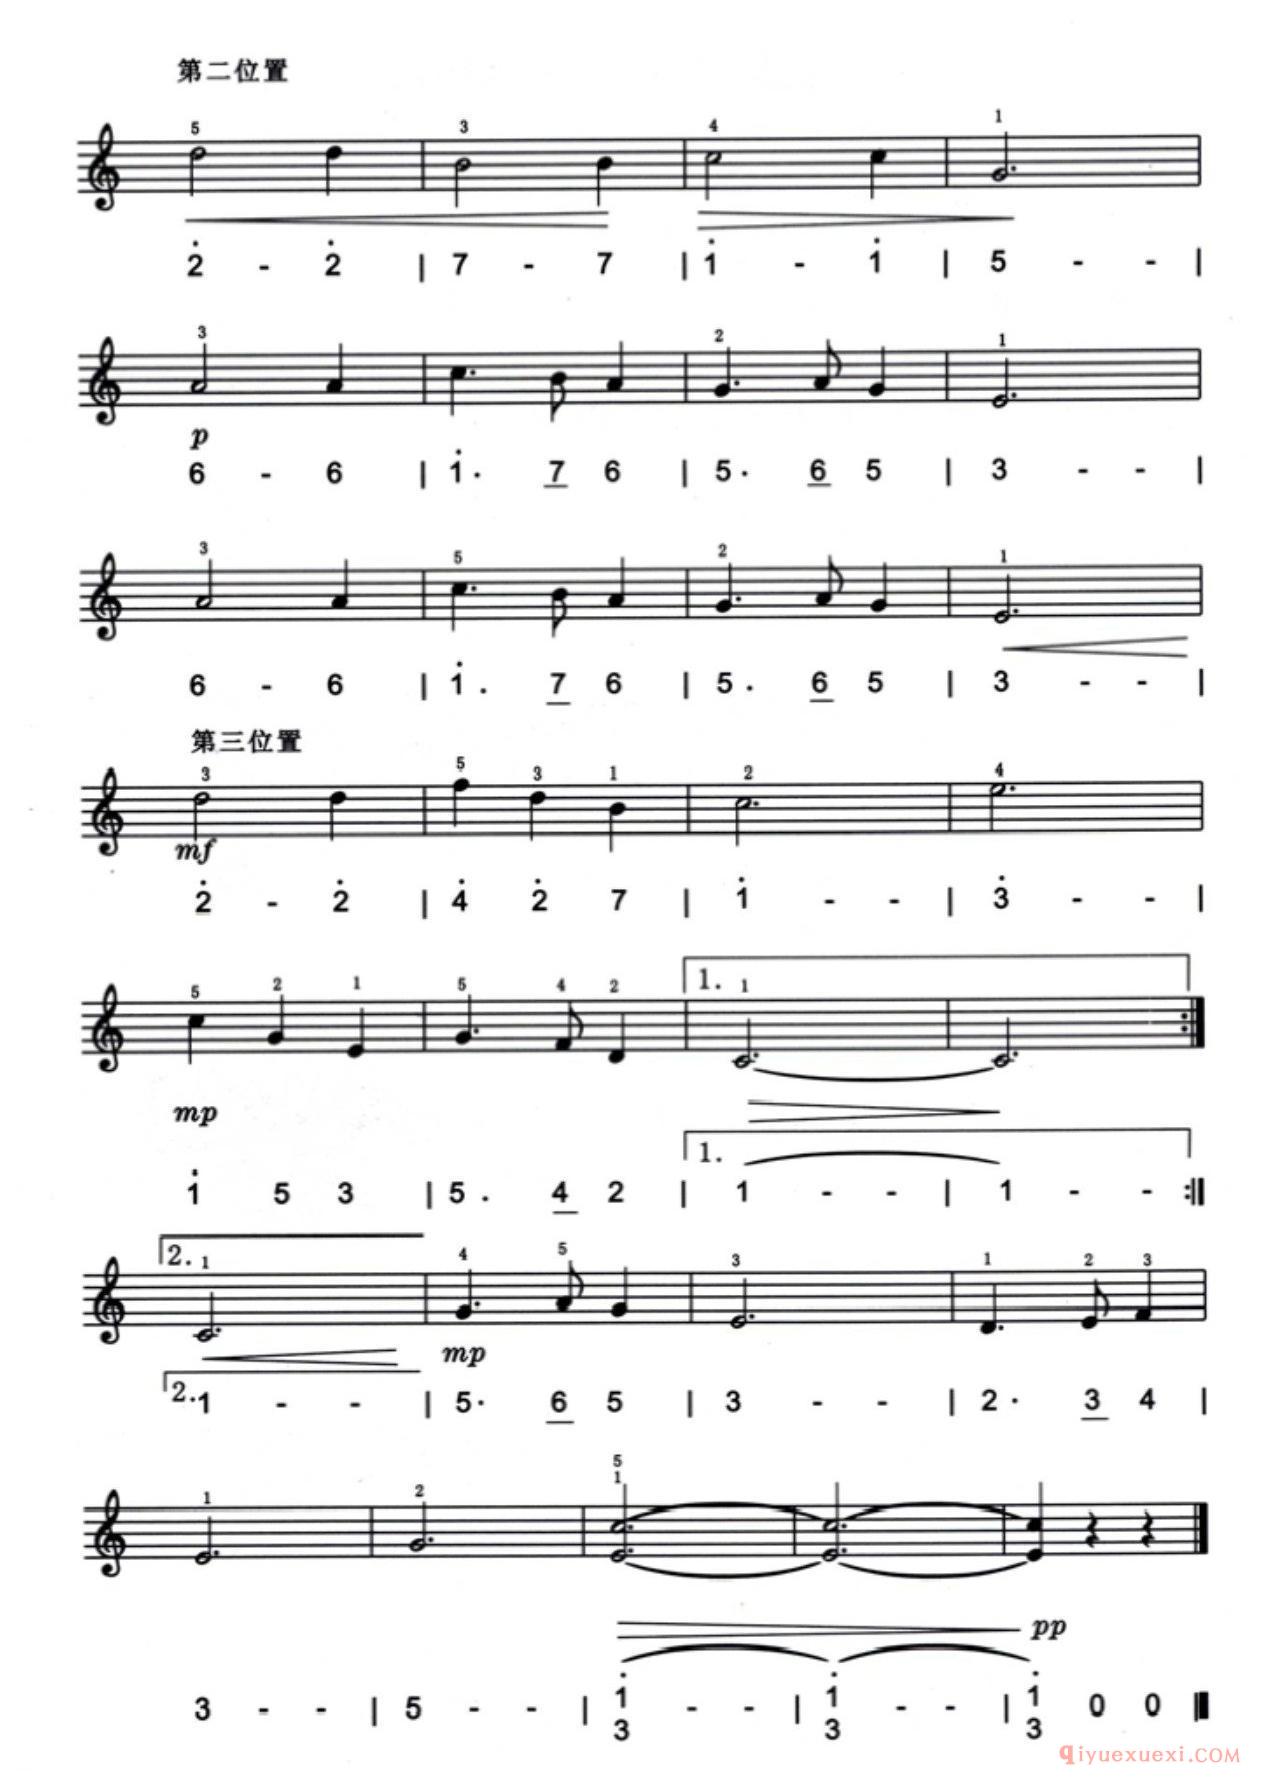 口风琴五指手法练习谱